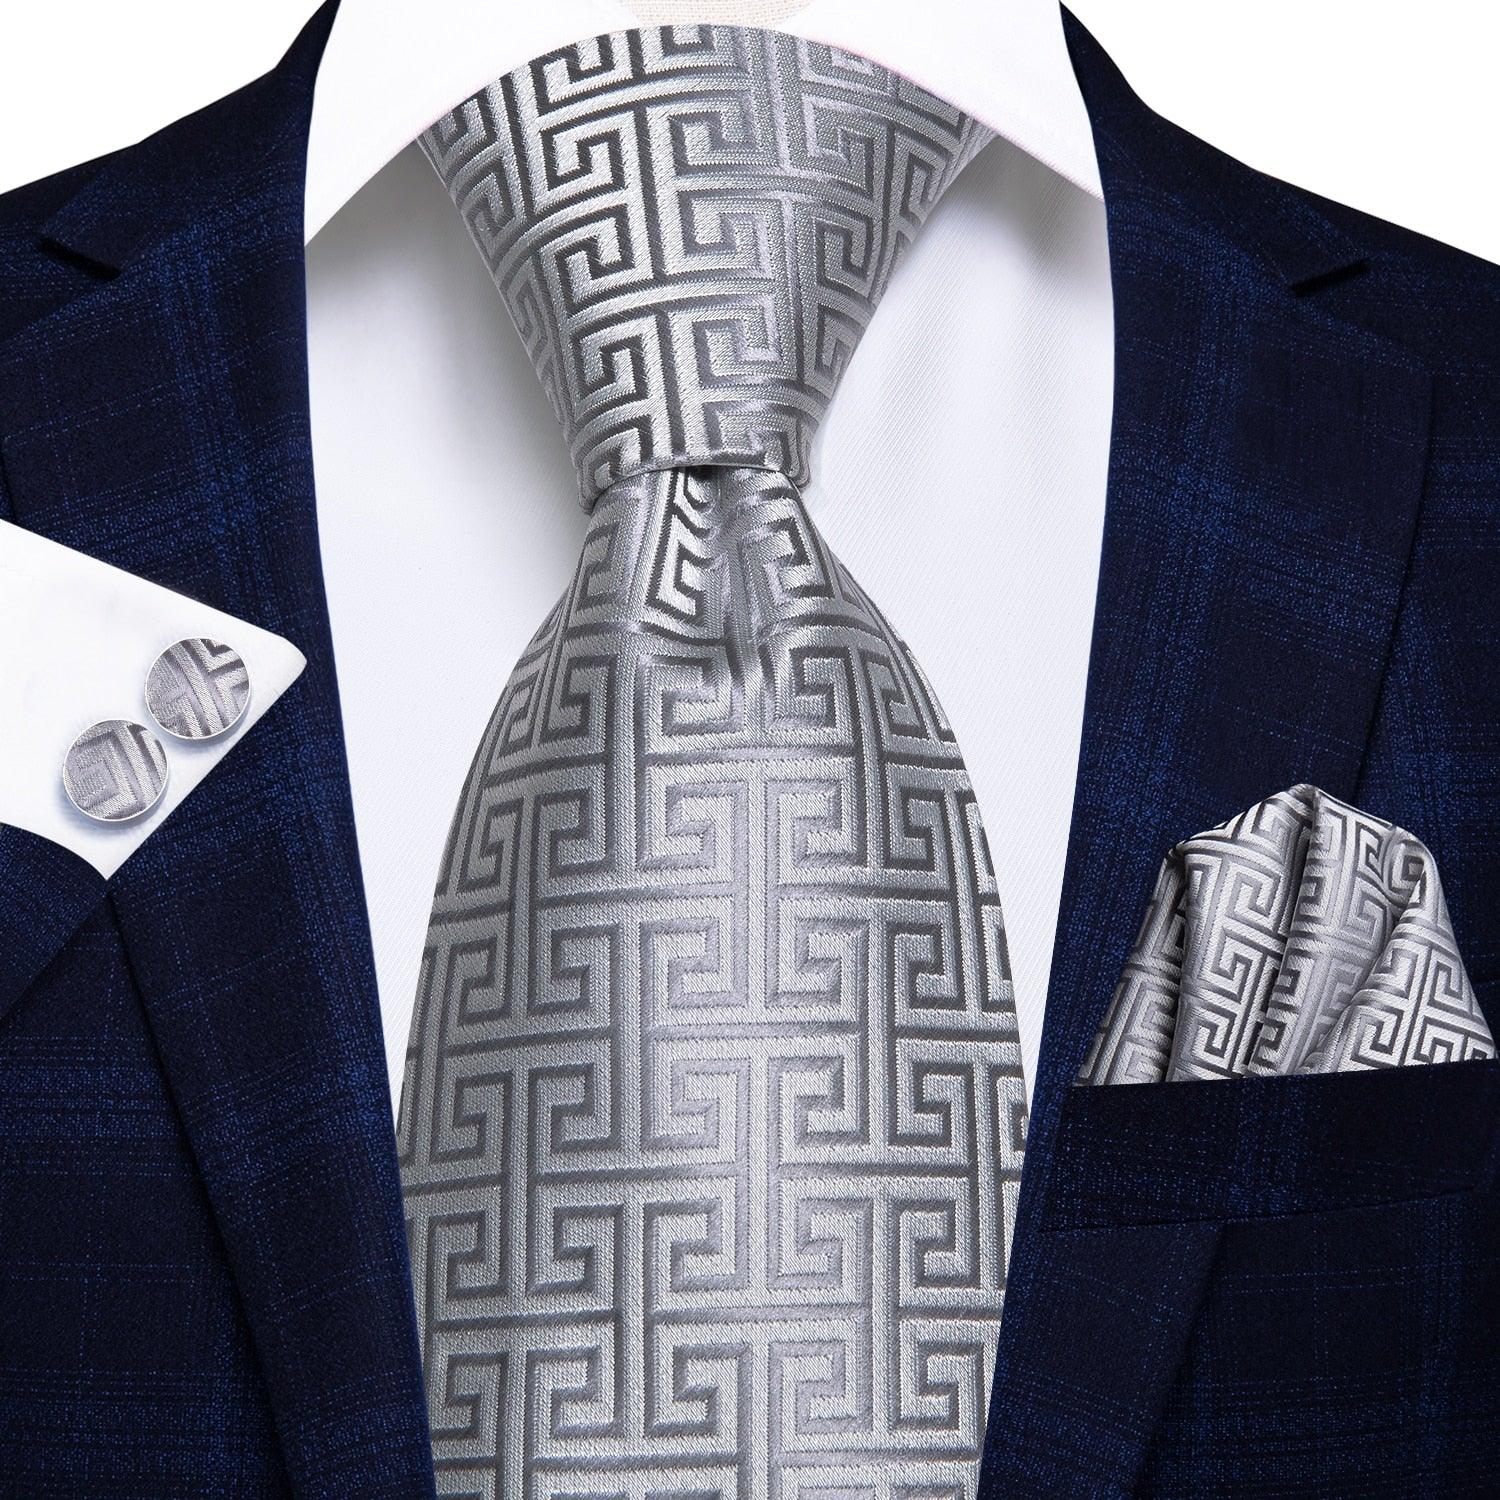 Men's Accessories - Ties Mens Formal Luxury Wedding Neckties Gravatas 100% Silk